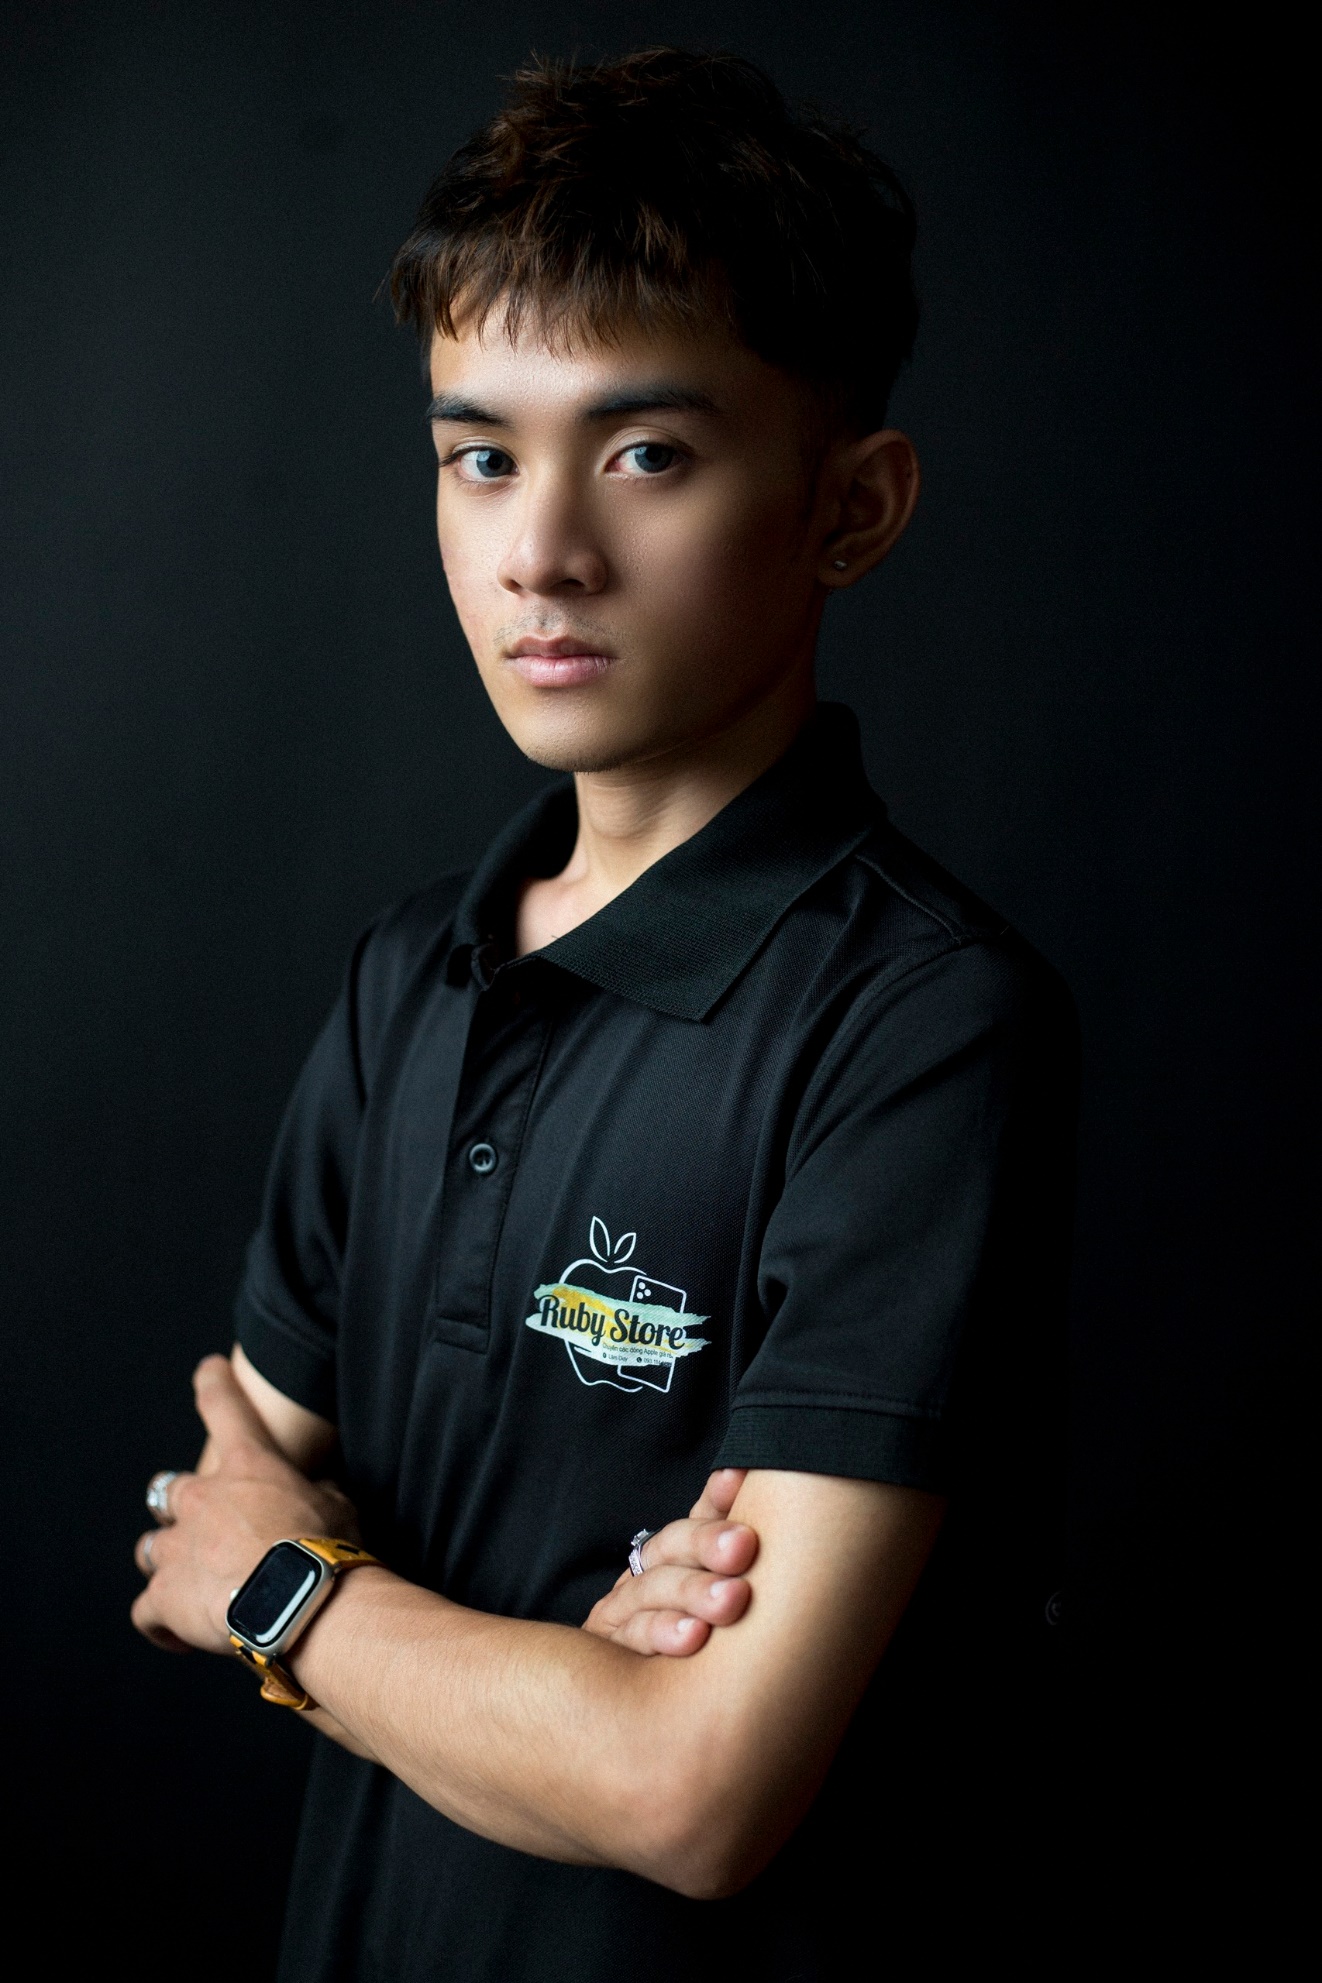 Chân dung Hotboy Lâm Duy khởi nghiệp kinh doanh thành công từ năm 16 tuổi - Ảnh 3.